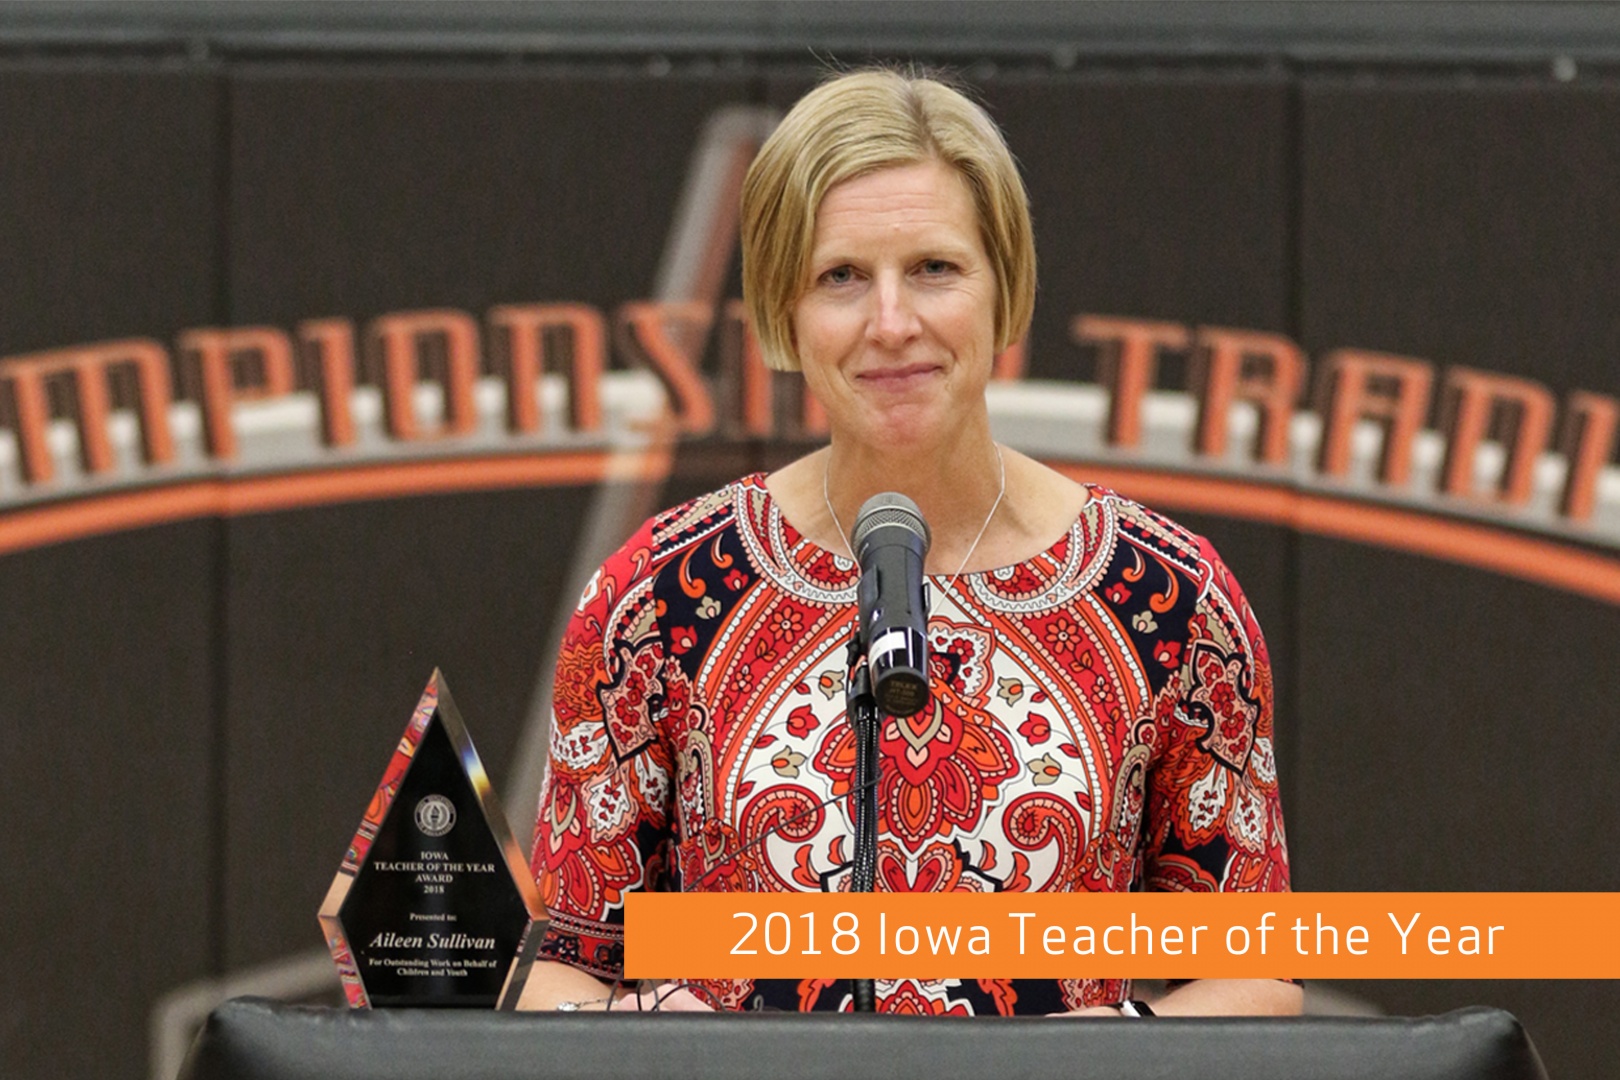 Iowa Teacher of the Year: Aileen Sullivan